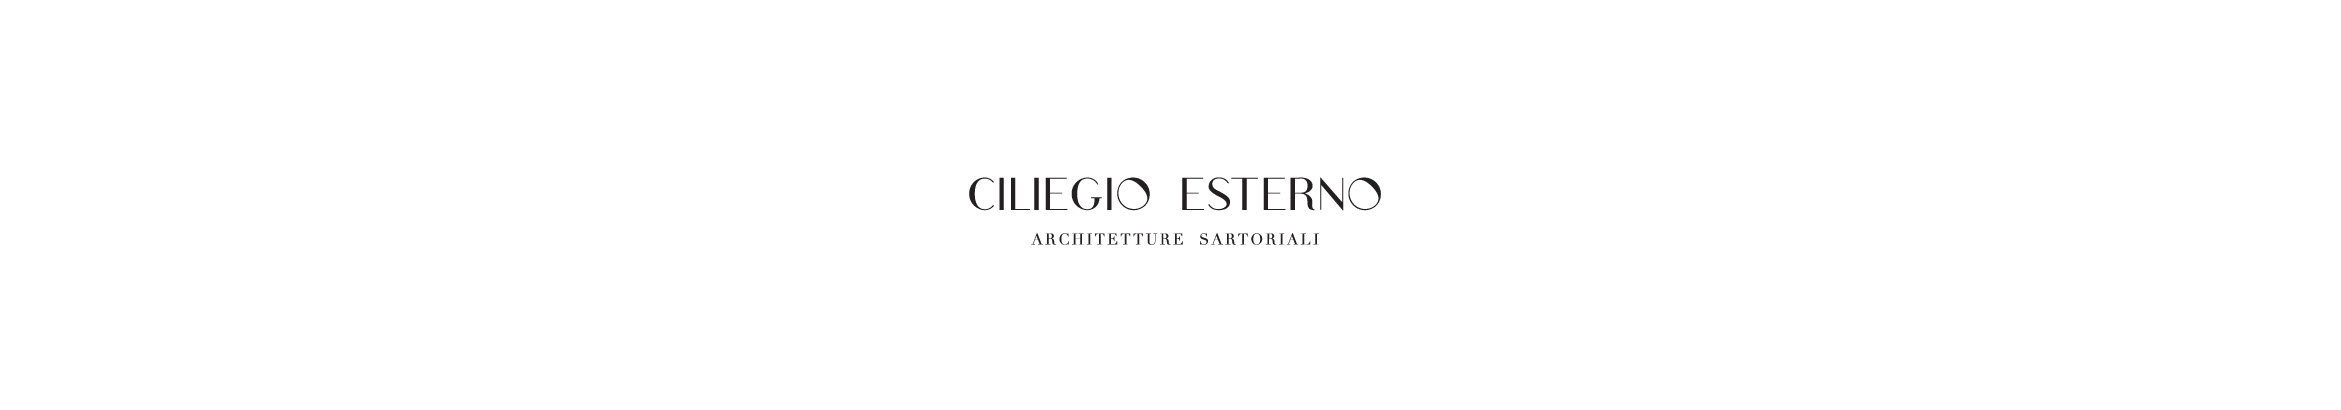 CiliegioEsterno Studio's profile banner